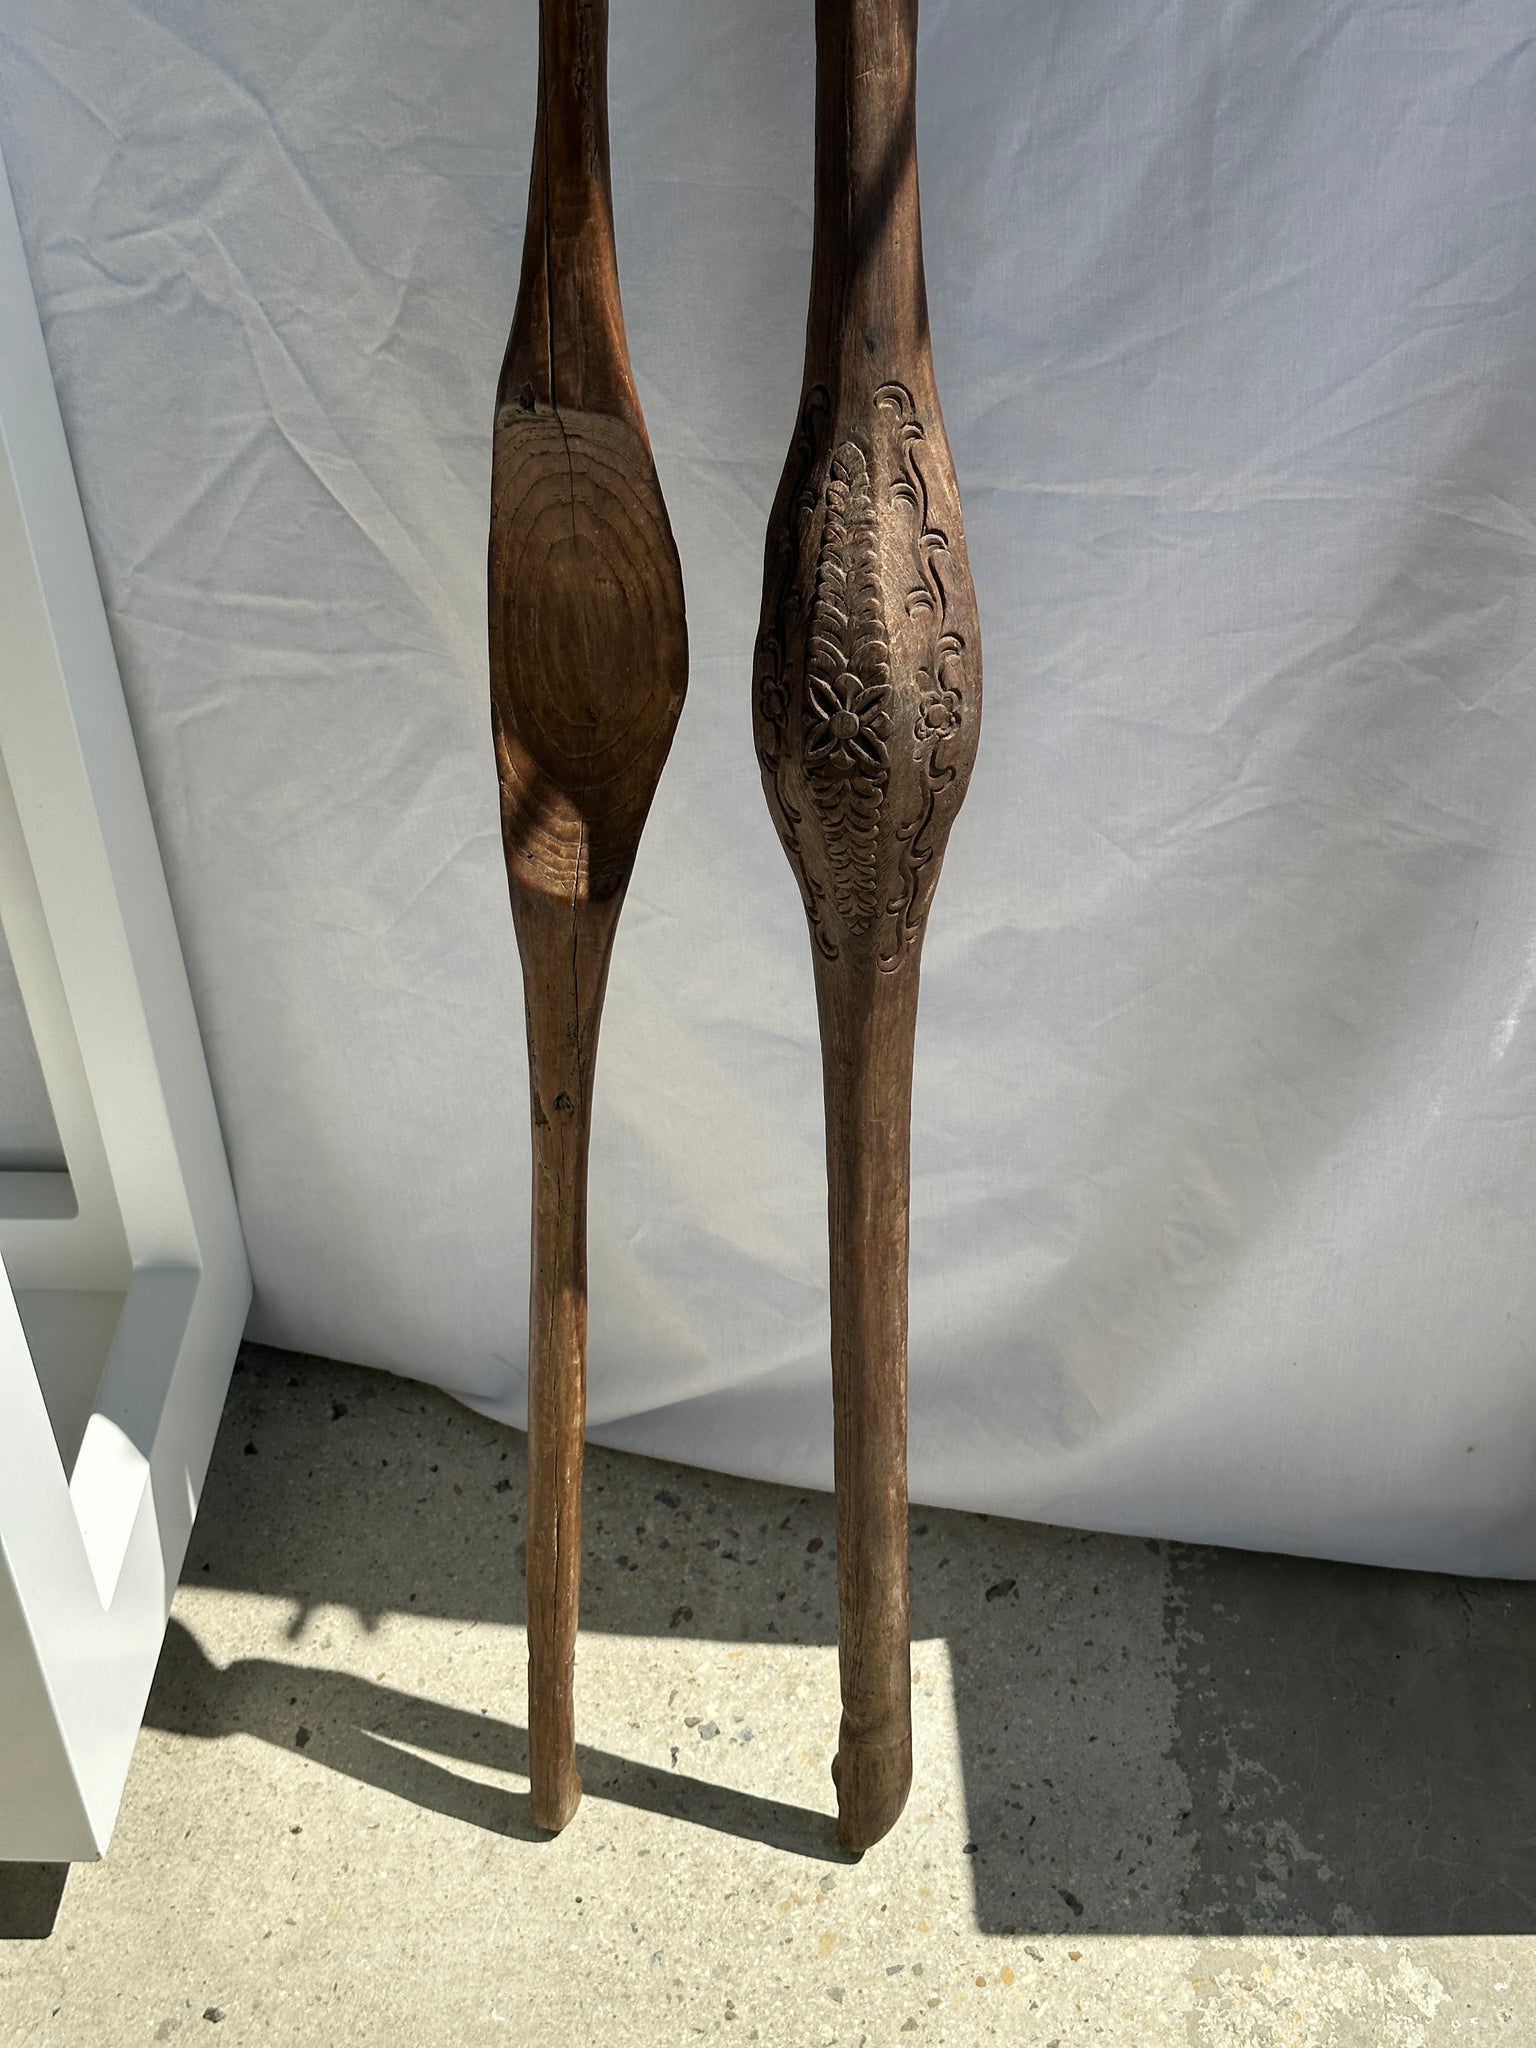 Duo de bâtons en bois sculpté, anciens outils traditionnels de tissage indonésiens